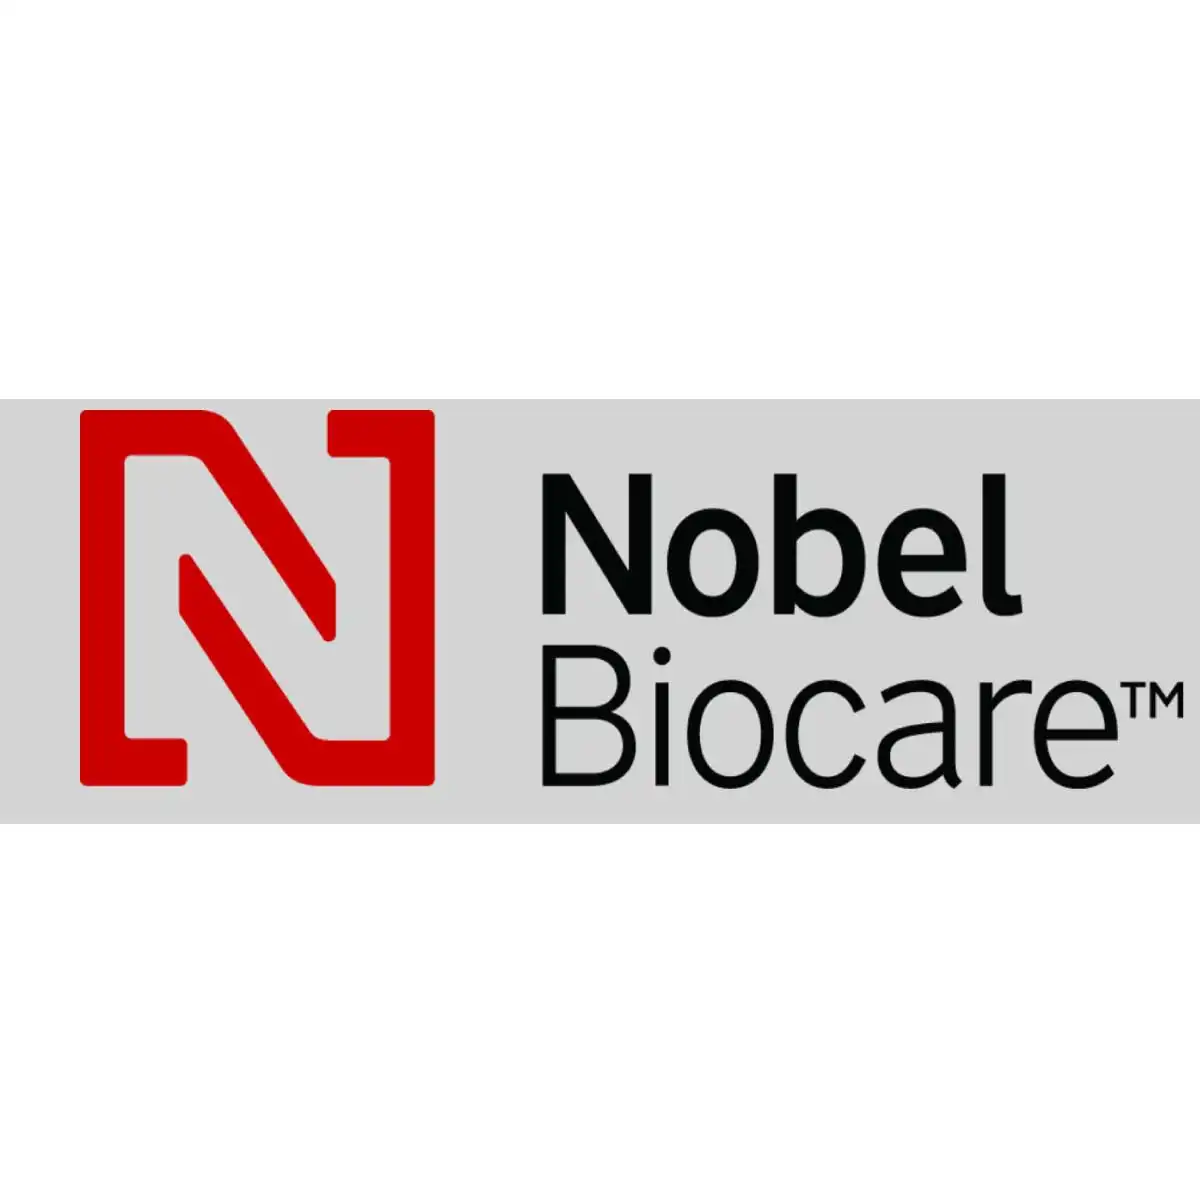 En İyi İmplant Markaları Nobel Biocare